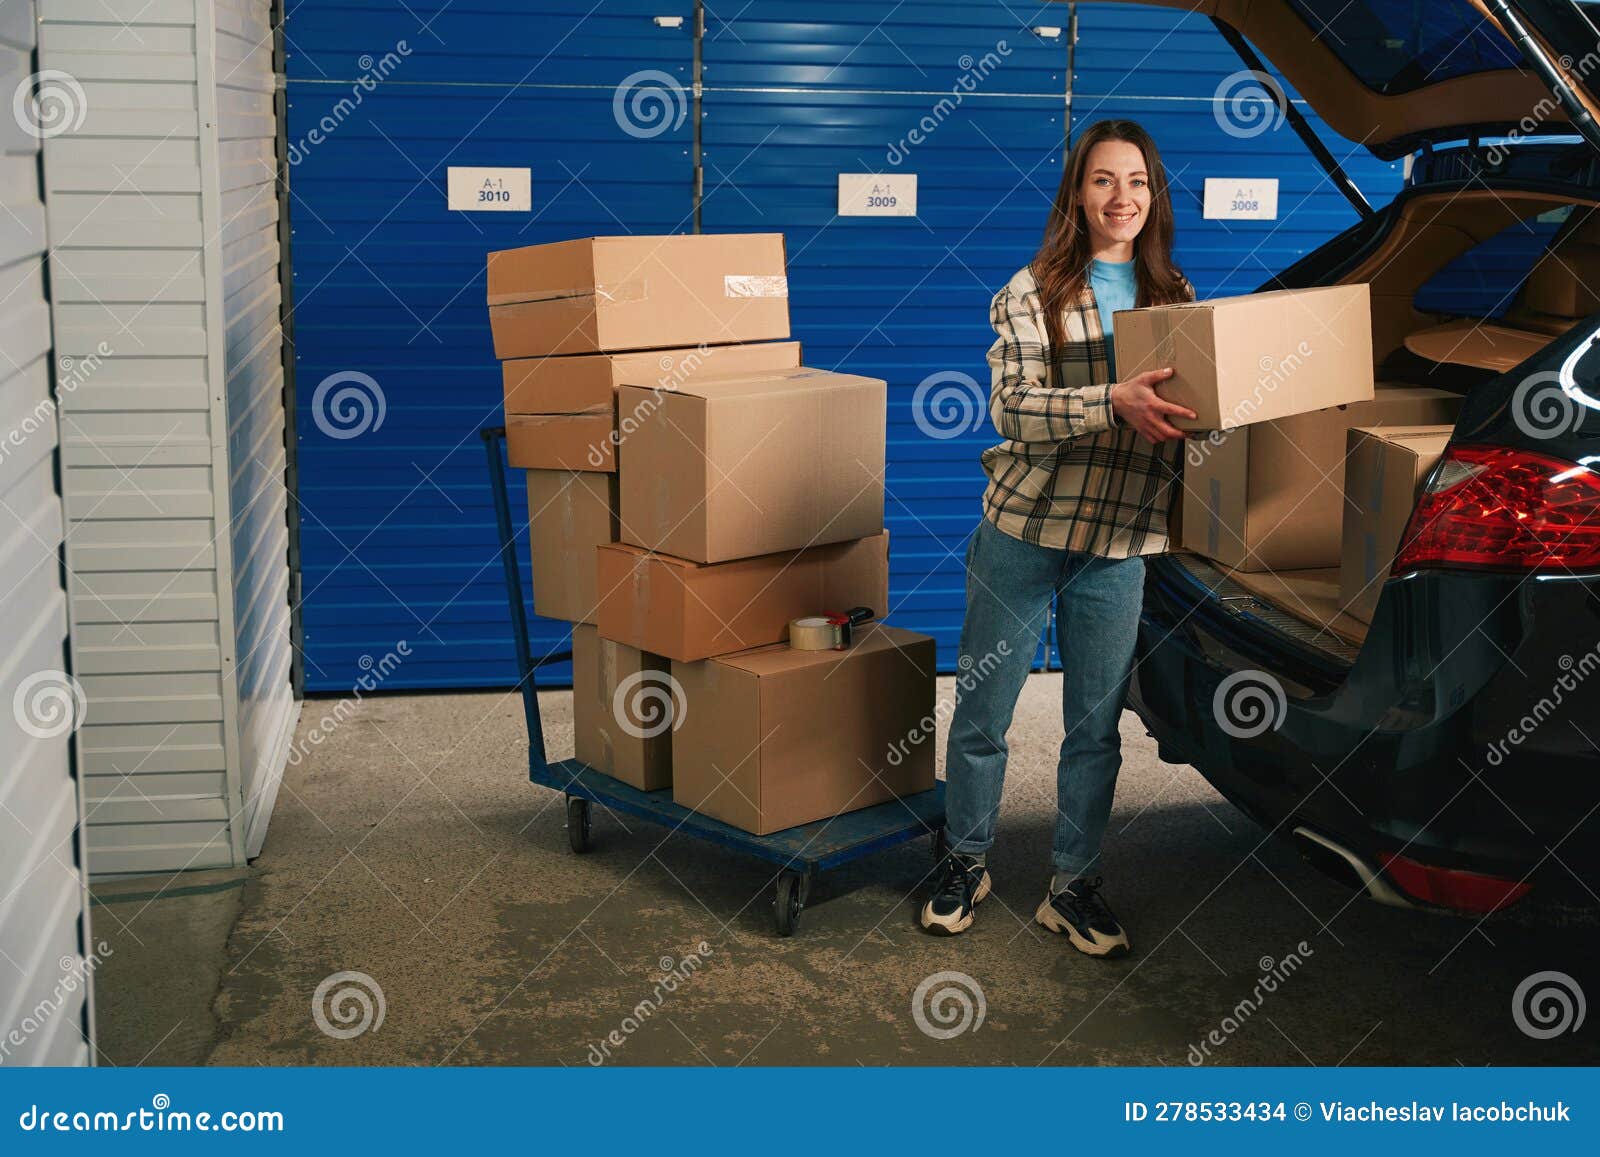 Coche con cajas de cartón en el maletero en un almacén con unidad